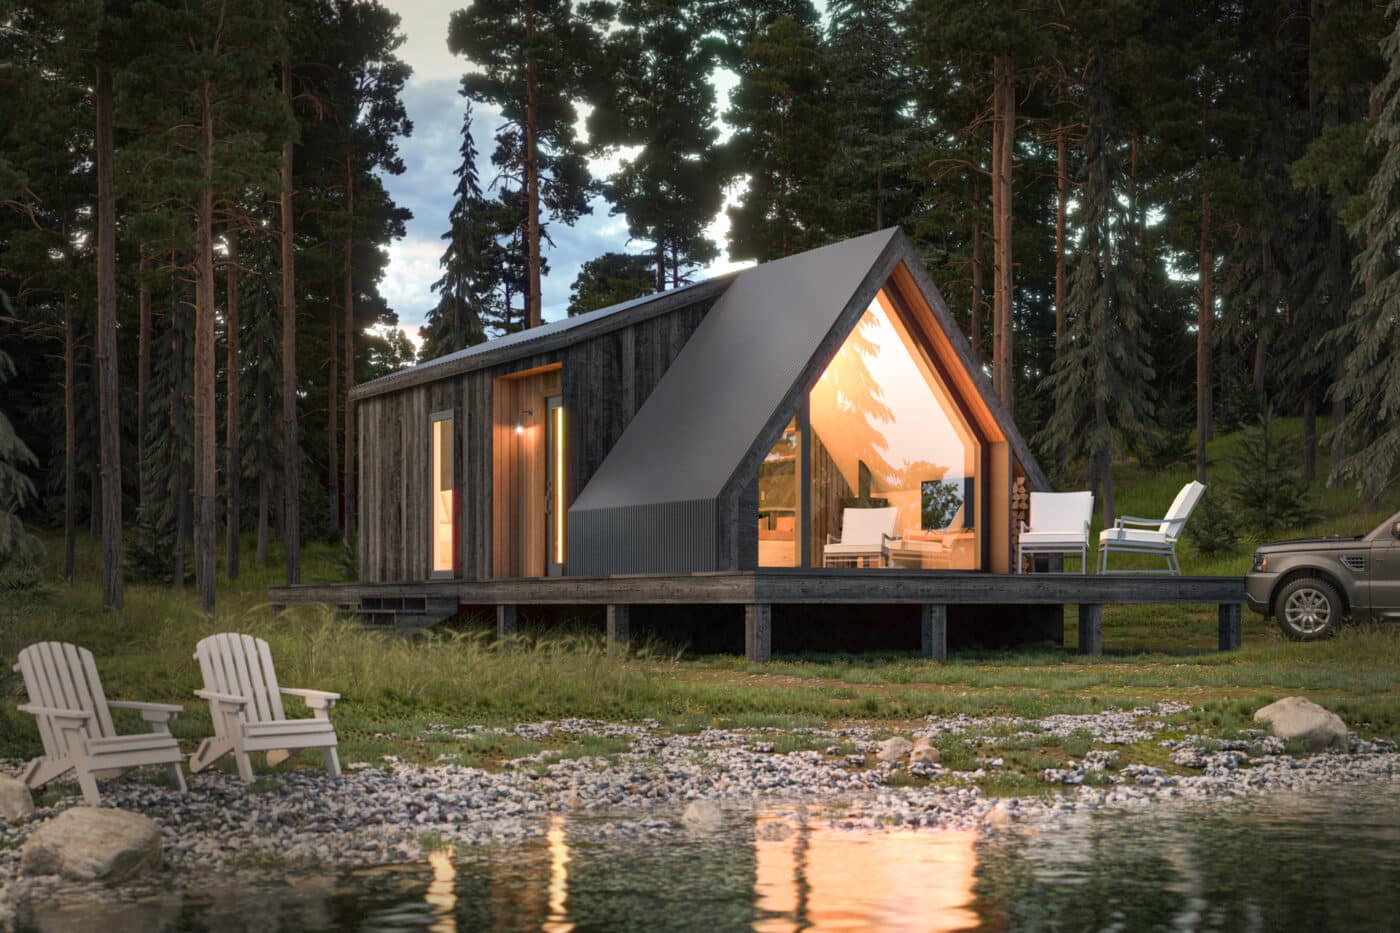 park model cabin for sale in utah